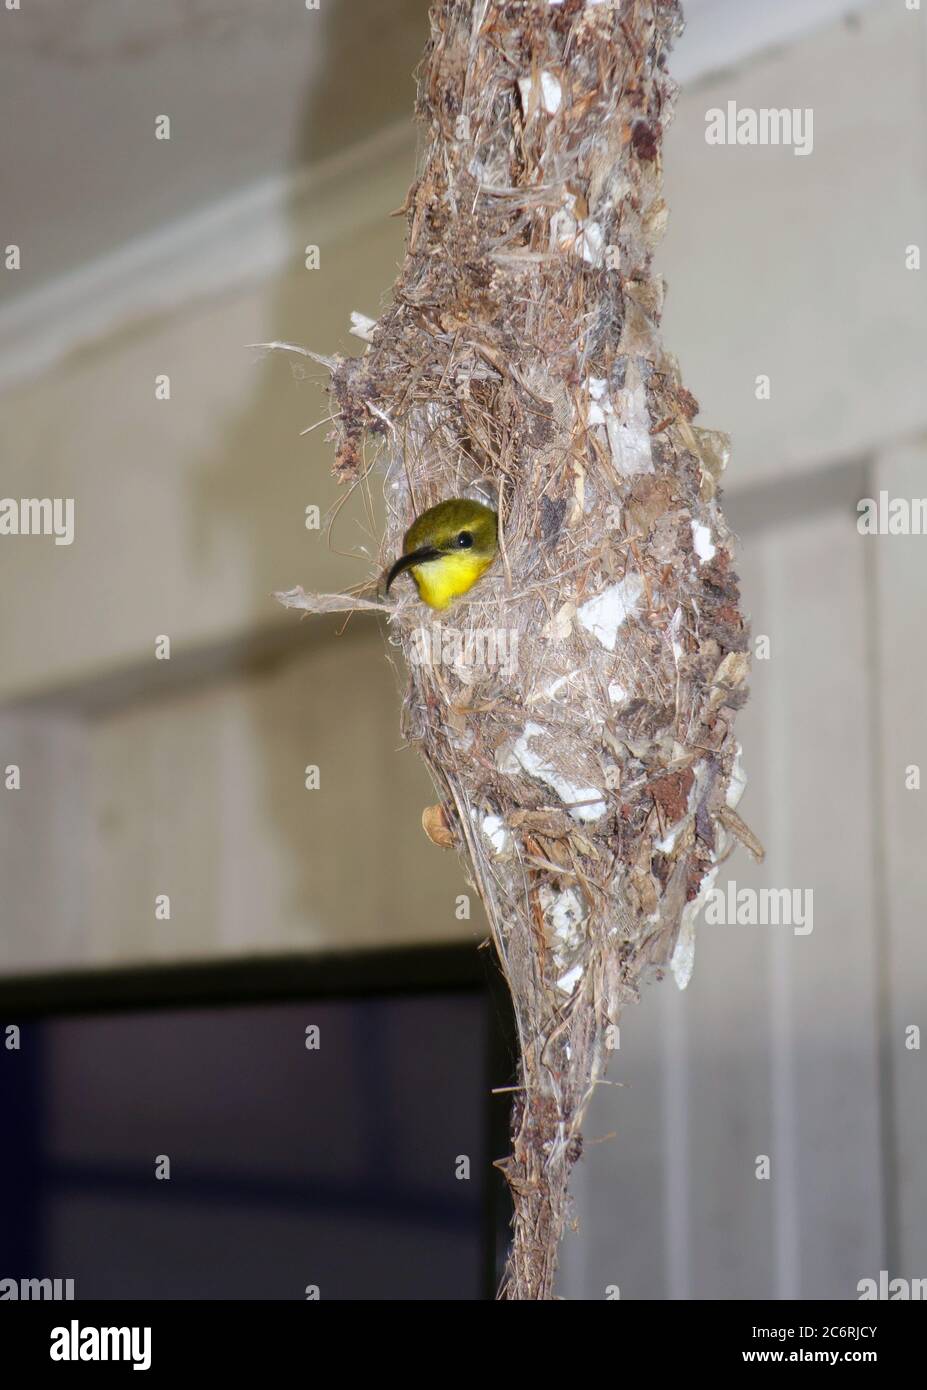 Femmina uccello da sole con spalle di ulivo (Cinnyris jugularis) su uova in nido sospeso all'interno di un cottage Queenslander, Cairns, Queensland, Australia. No PR Foto Stock